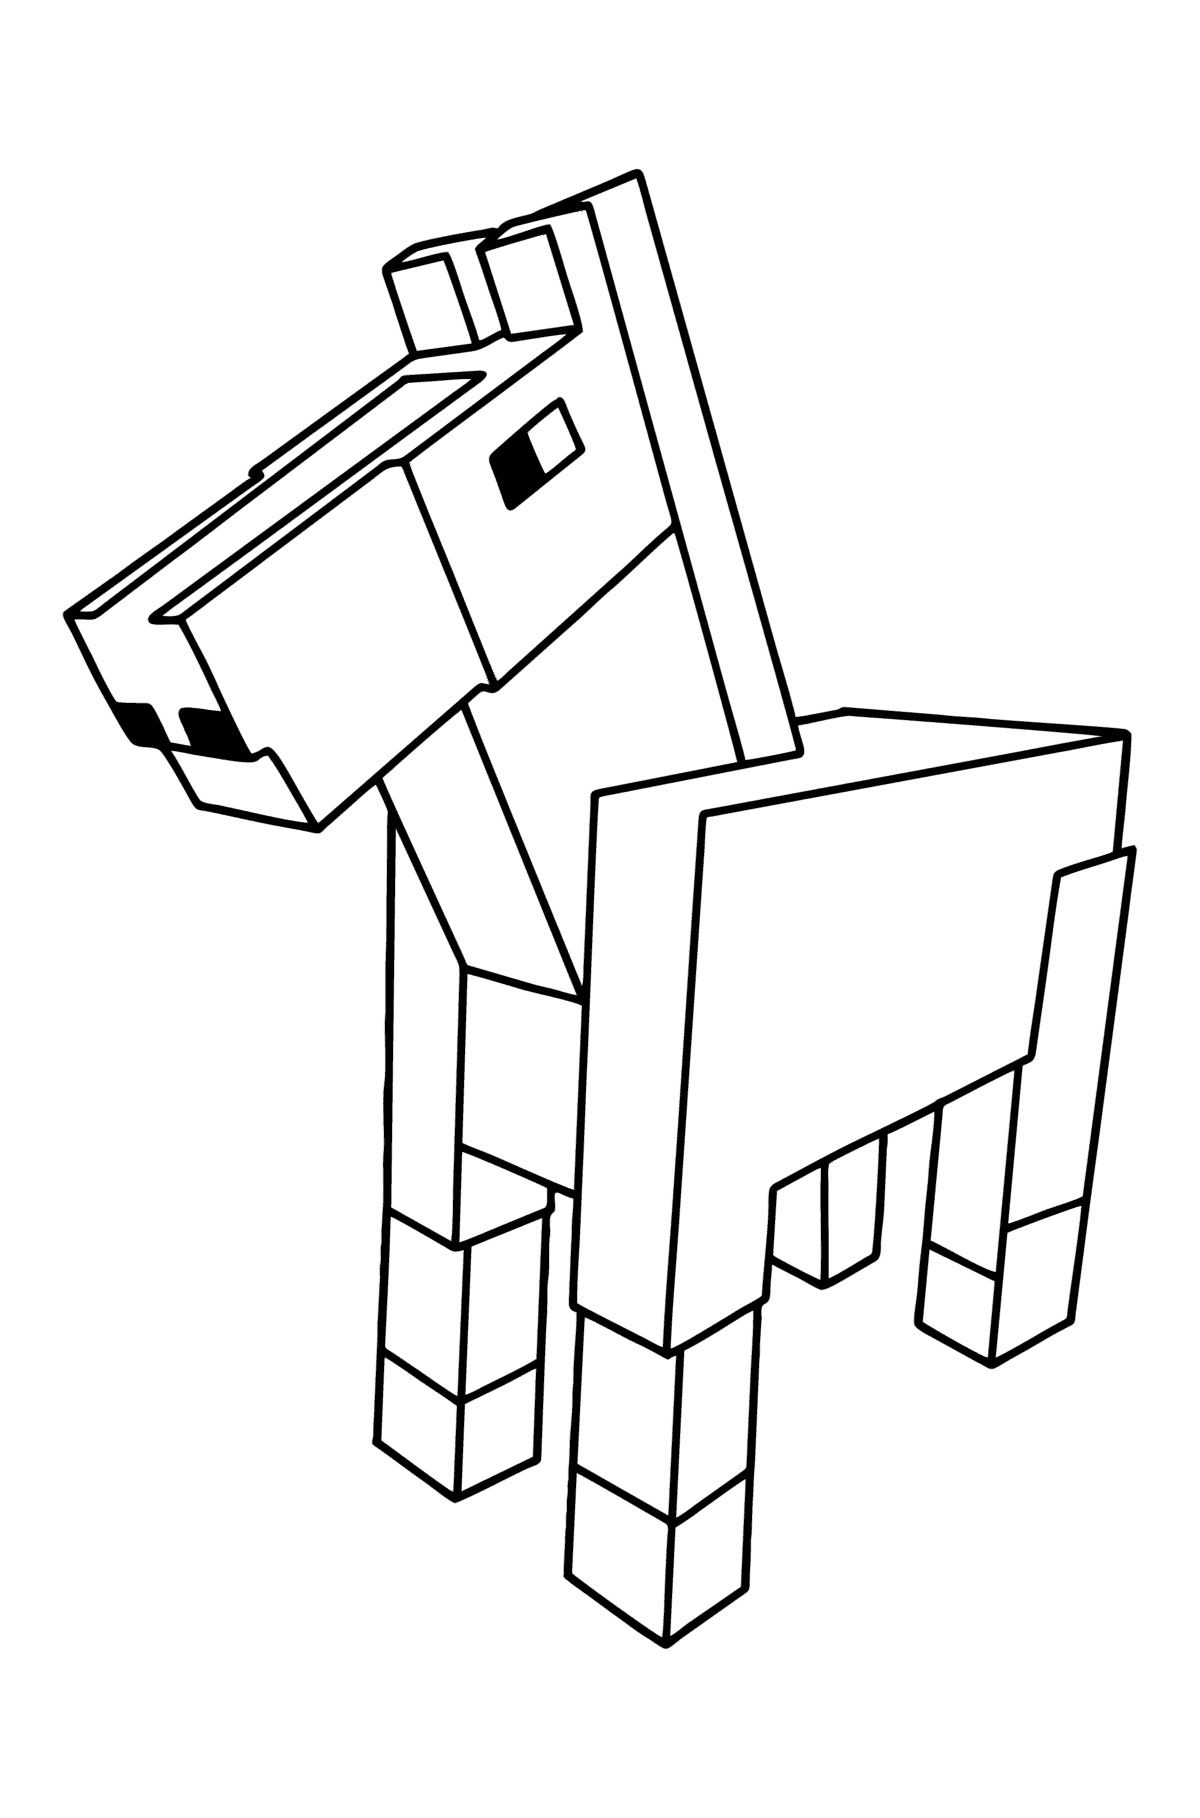 Dibujo de Minecraft Horse para colorear - Dibujos para Colorear para Niños